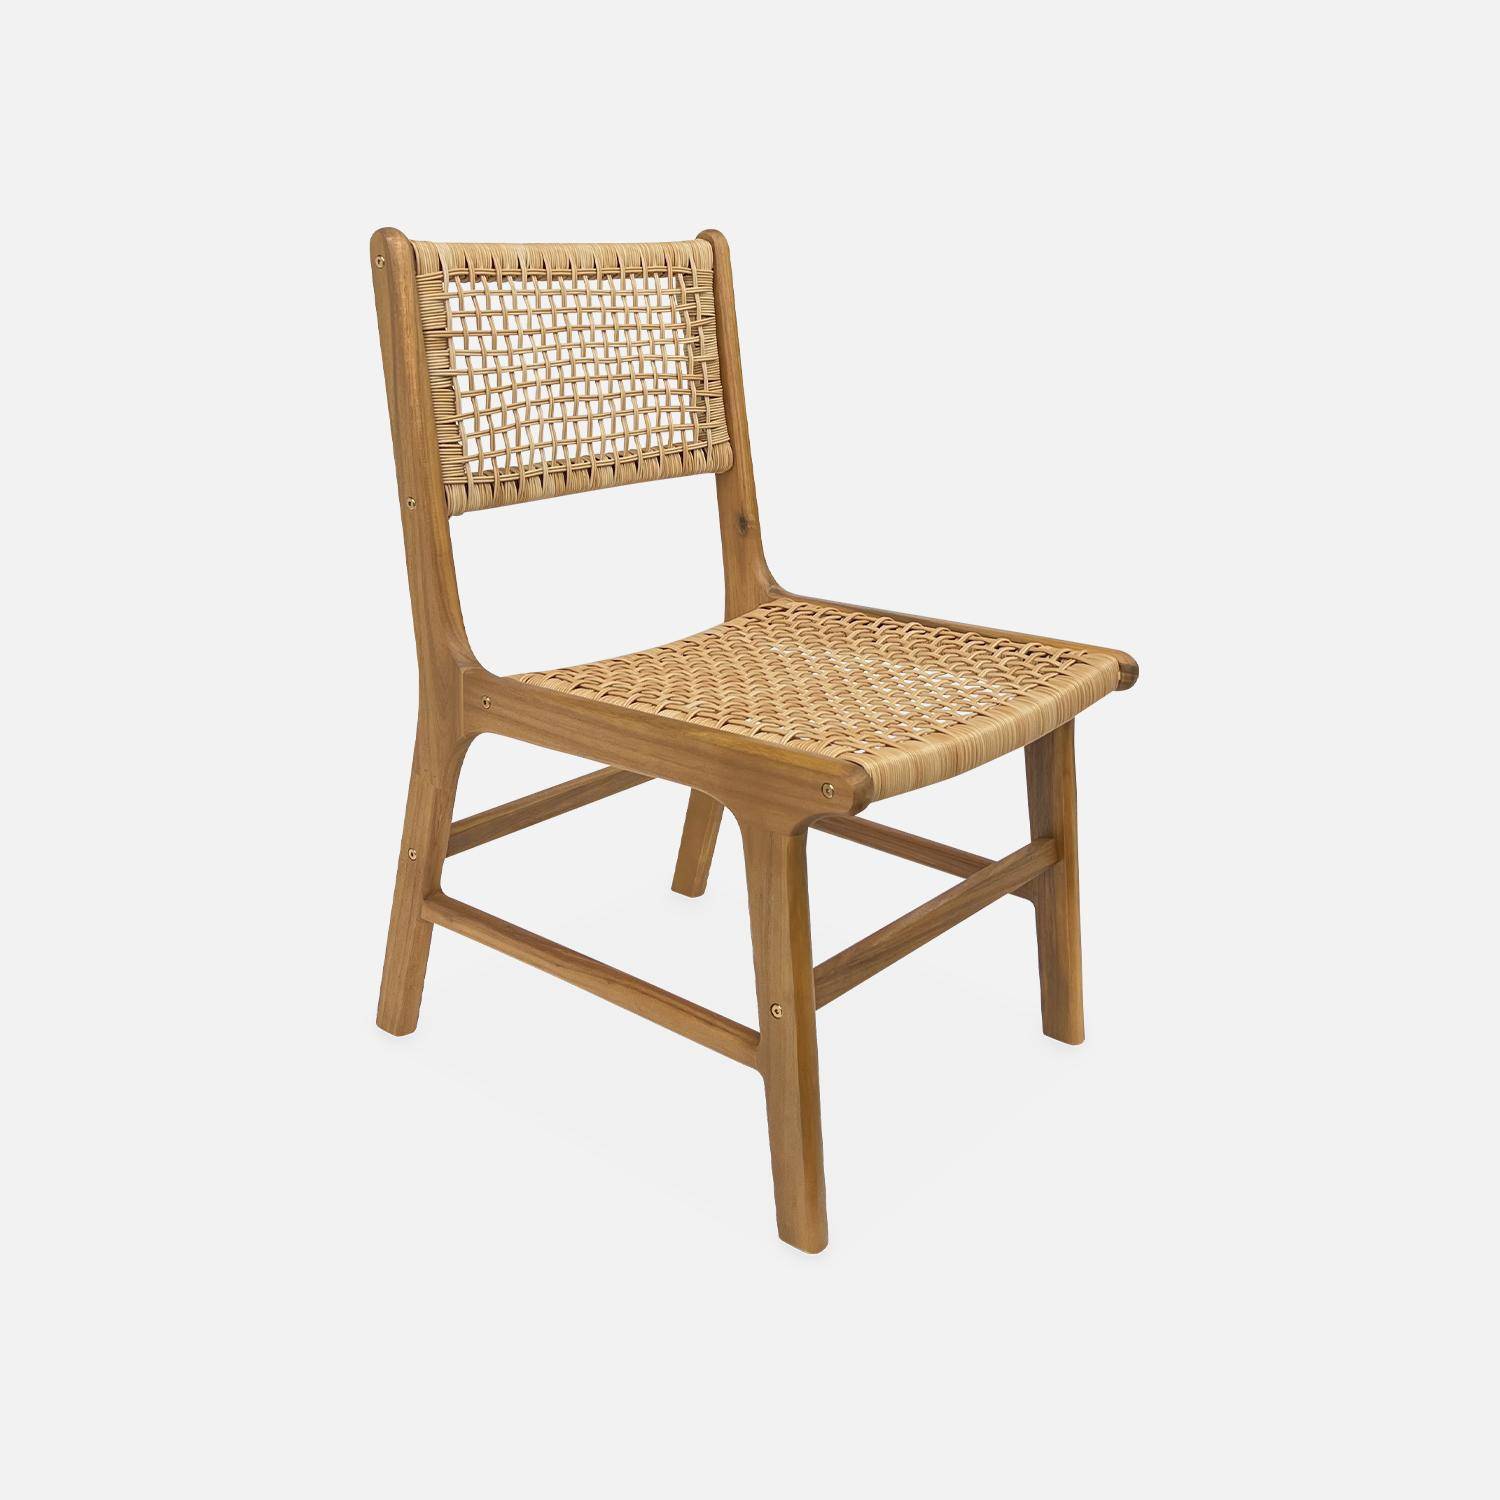 Table intérieur / extérieur Santana en bois et métal 150cm + 4 chaises de jardin Ocara, cannage et bois Photo5